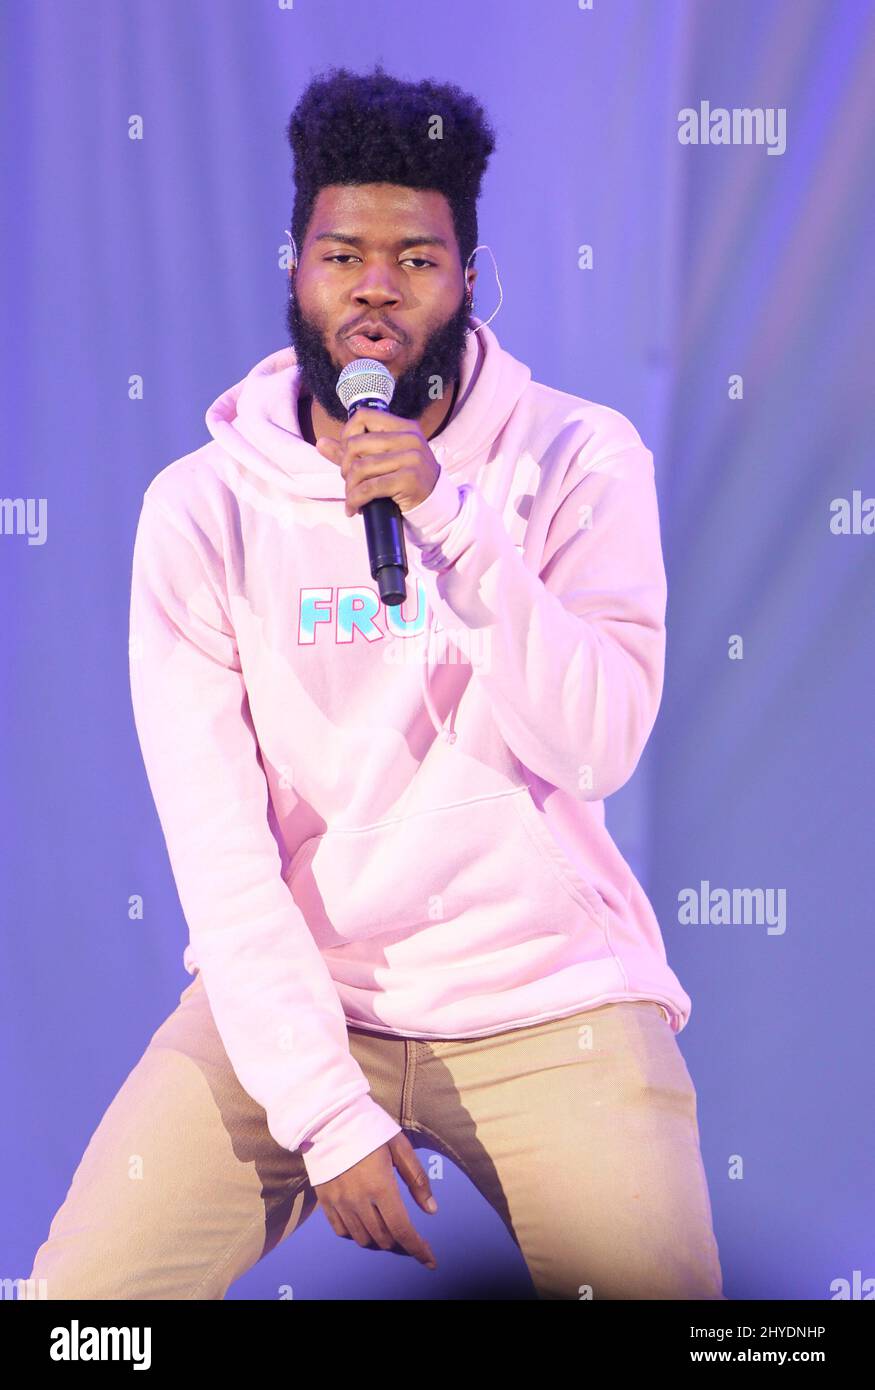 Khalid partecipa al quinto programma annuale della CBS radio "We Can Survive 2017", che riunisce gli artisti più popolari di oggi per sensibilizzare l'opinione pubblica su una causa degna e celebrare i sopravvissuti all'Hollywood Bow Foto Stock